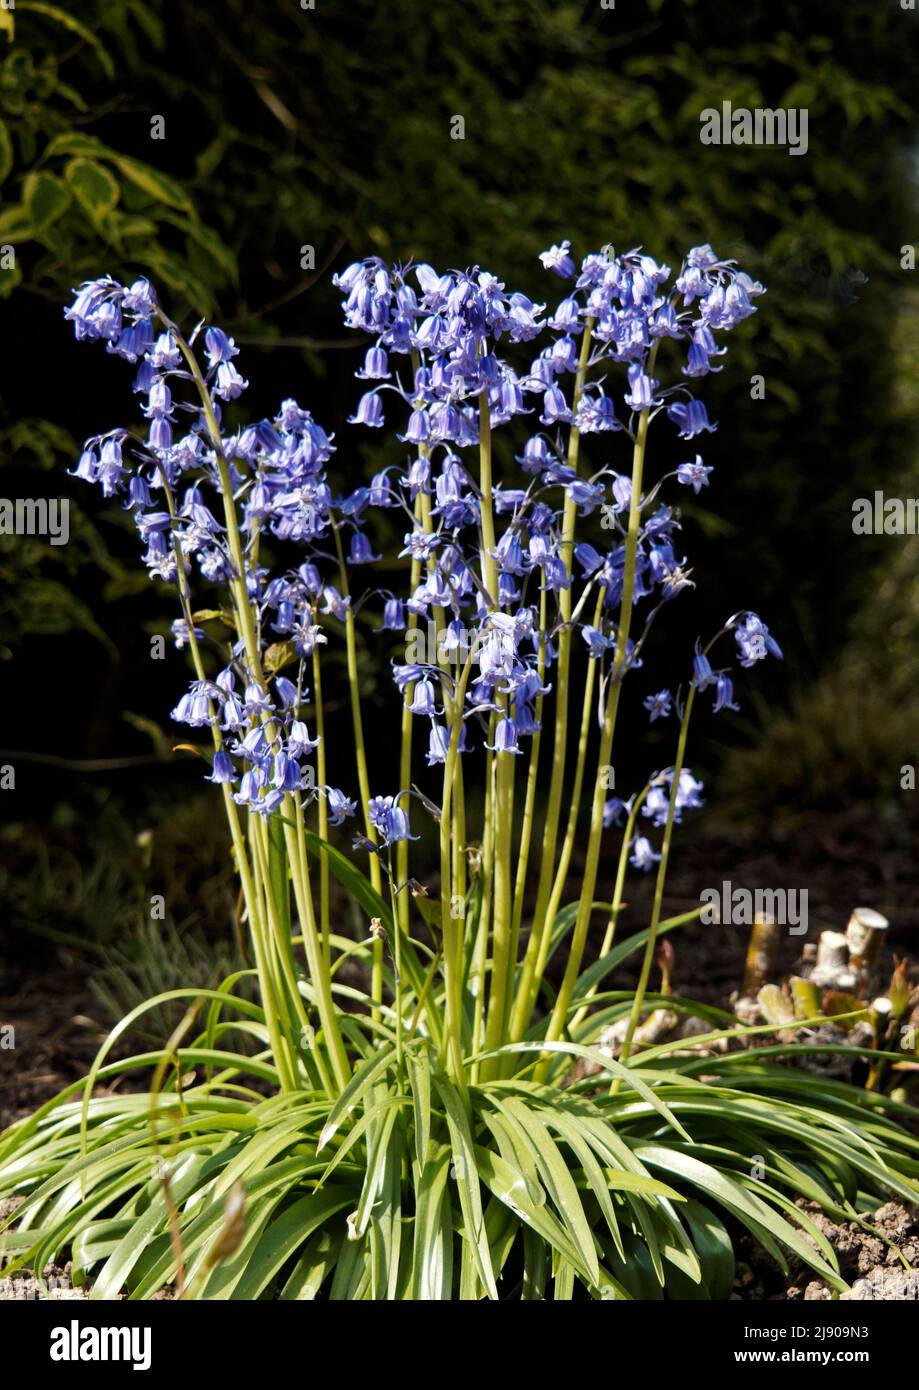 Los bluebells son hierbas perennes en forma de campana. Pasar la mayoría de su tiempo bajo tierra como bulbos, emergiendo, a menudo en montones en abril y mayo. Foto de stock